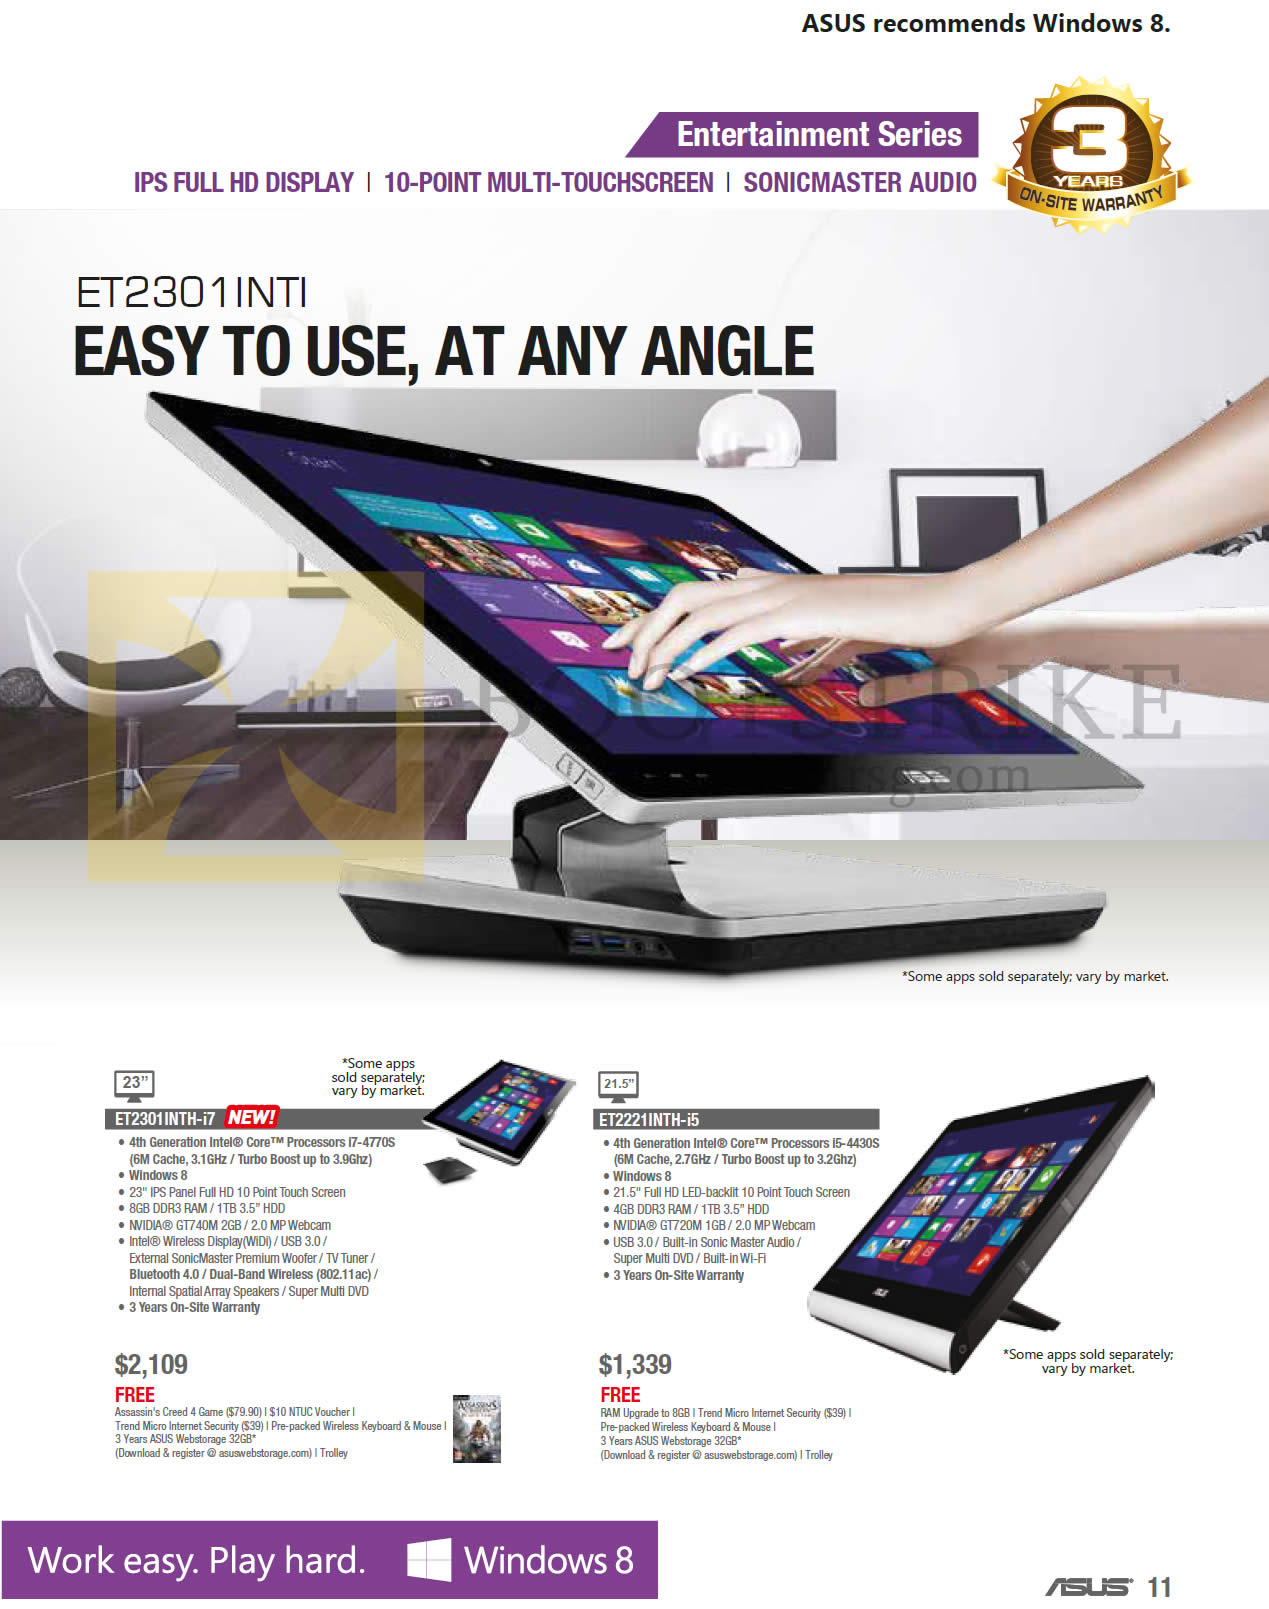 SITEX 2013 price list image brochure of ASUS AIO Desktop PCs ET2301INTH, ET2221INTH